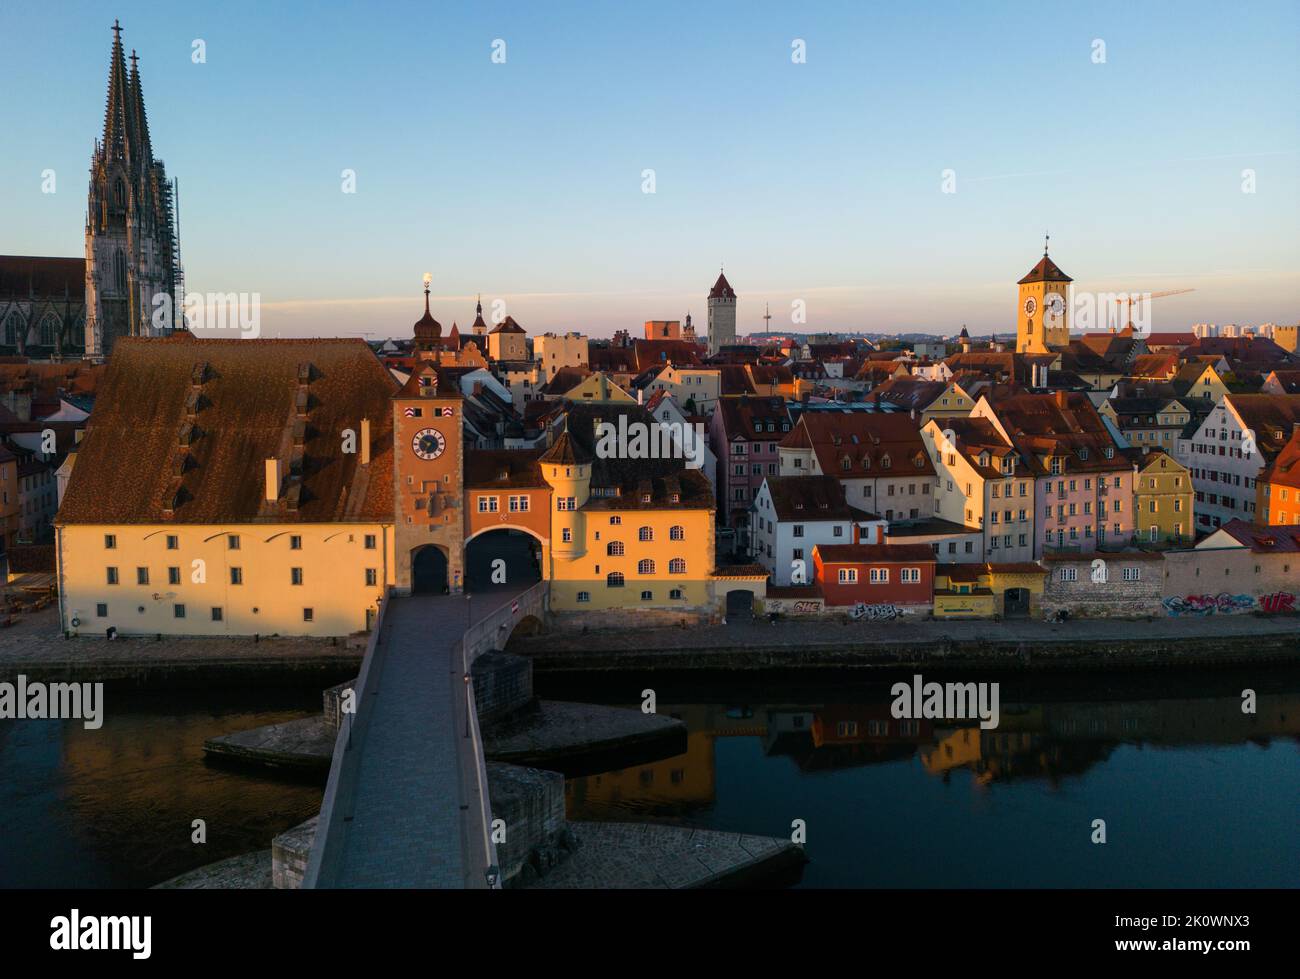 Regensburg, Deutschland. Eine Drohnenaufnahme der alten Steinbrücke, des Bruckturms, des Petersdoms und anderer Gebäude im alten Stadtzentrum bei Sonnenaufgang Stockfoto